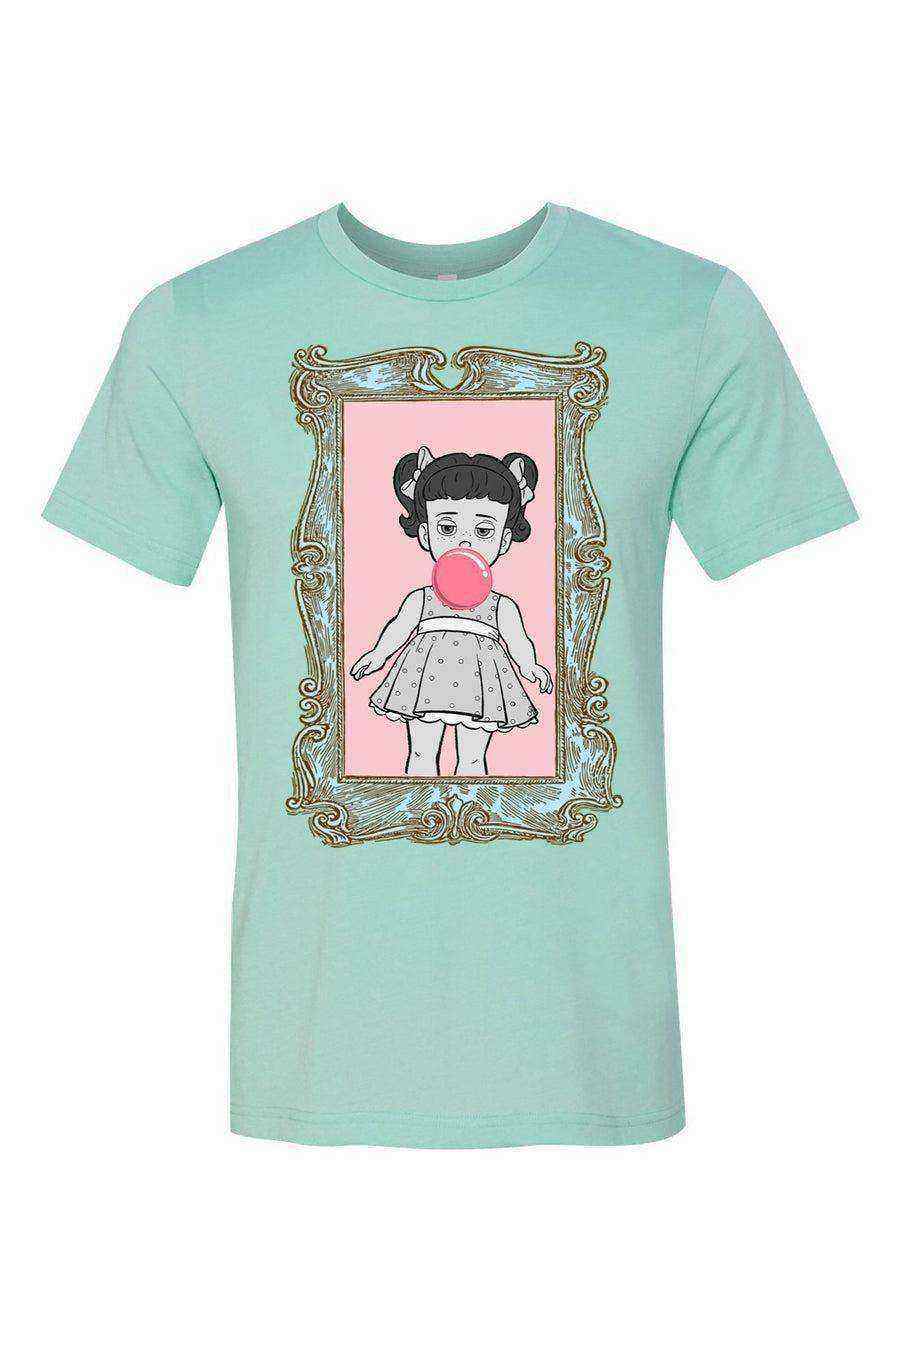 Gabby Gabby Bubblegum Pop Art Shirt | Gabby Gabby Shirts - Dylan's Tees